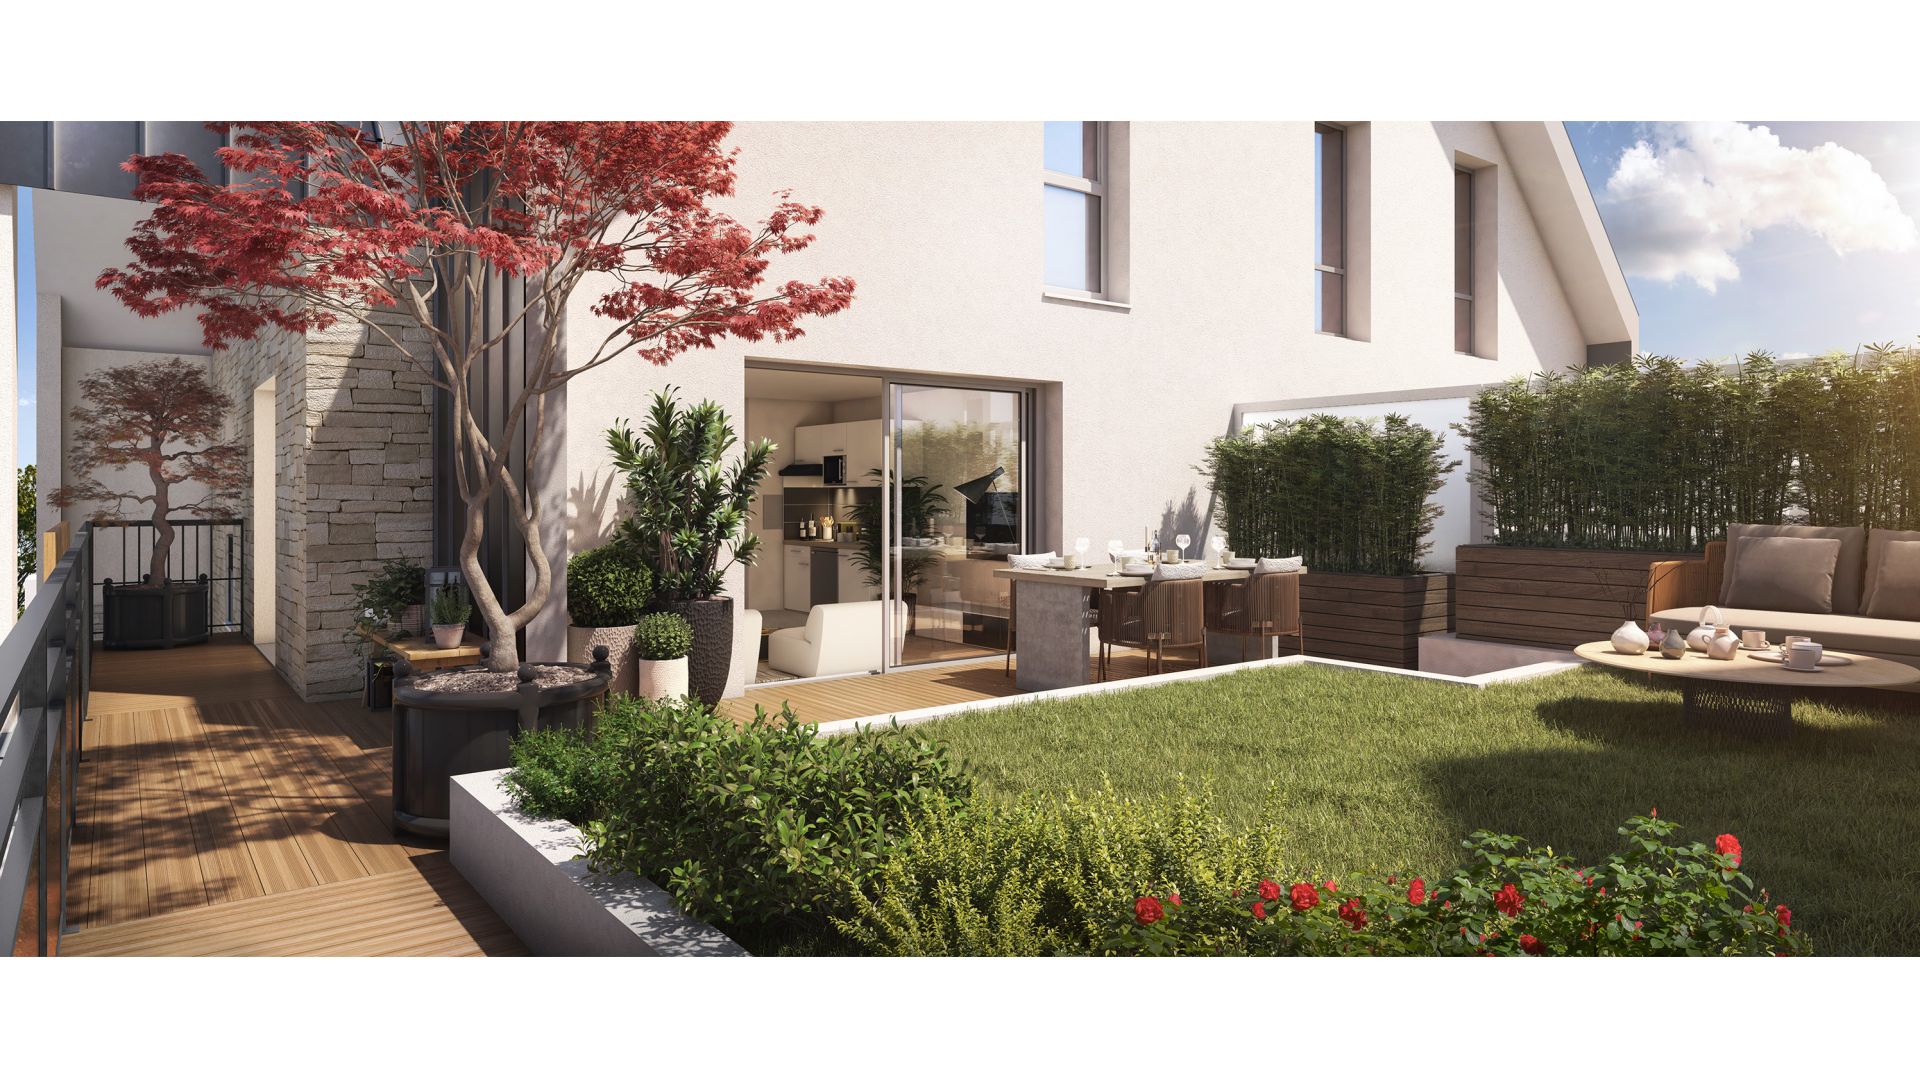 Greencity immobilier - achat appartements neufs du T1 au T4 - Résidence Opportunity - 64430 Chennevières-sur-Marne - vue terrasse